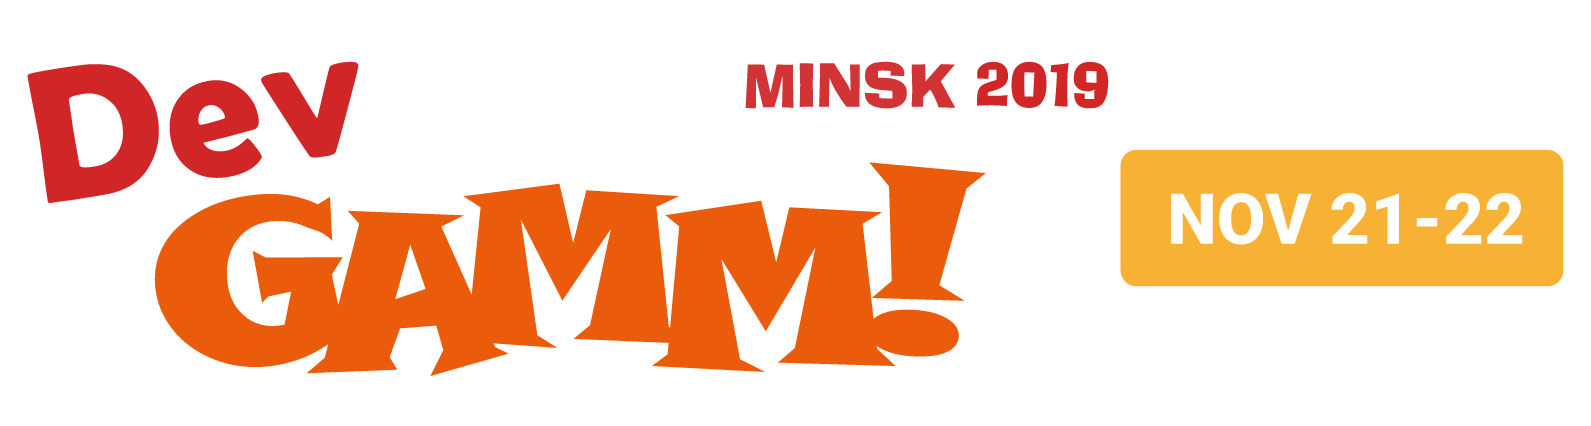 Party hardcore in Minsk